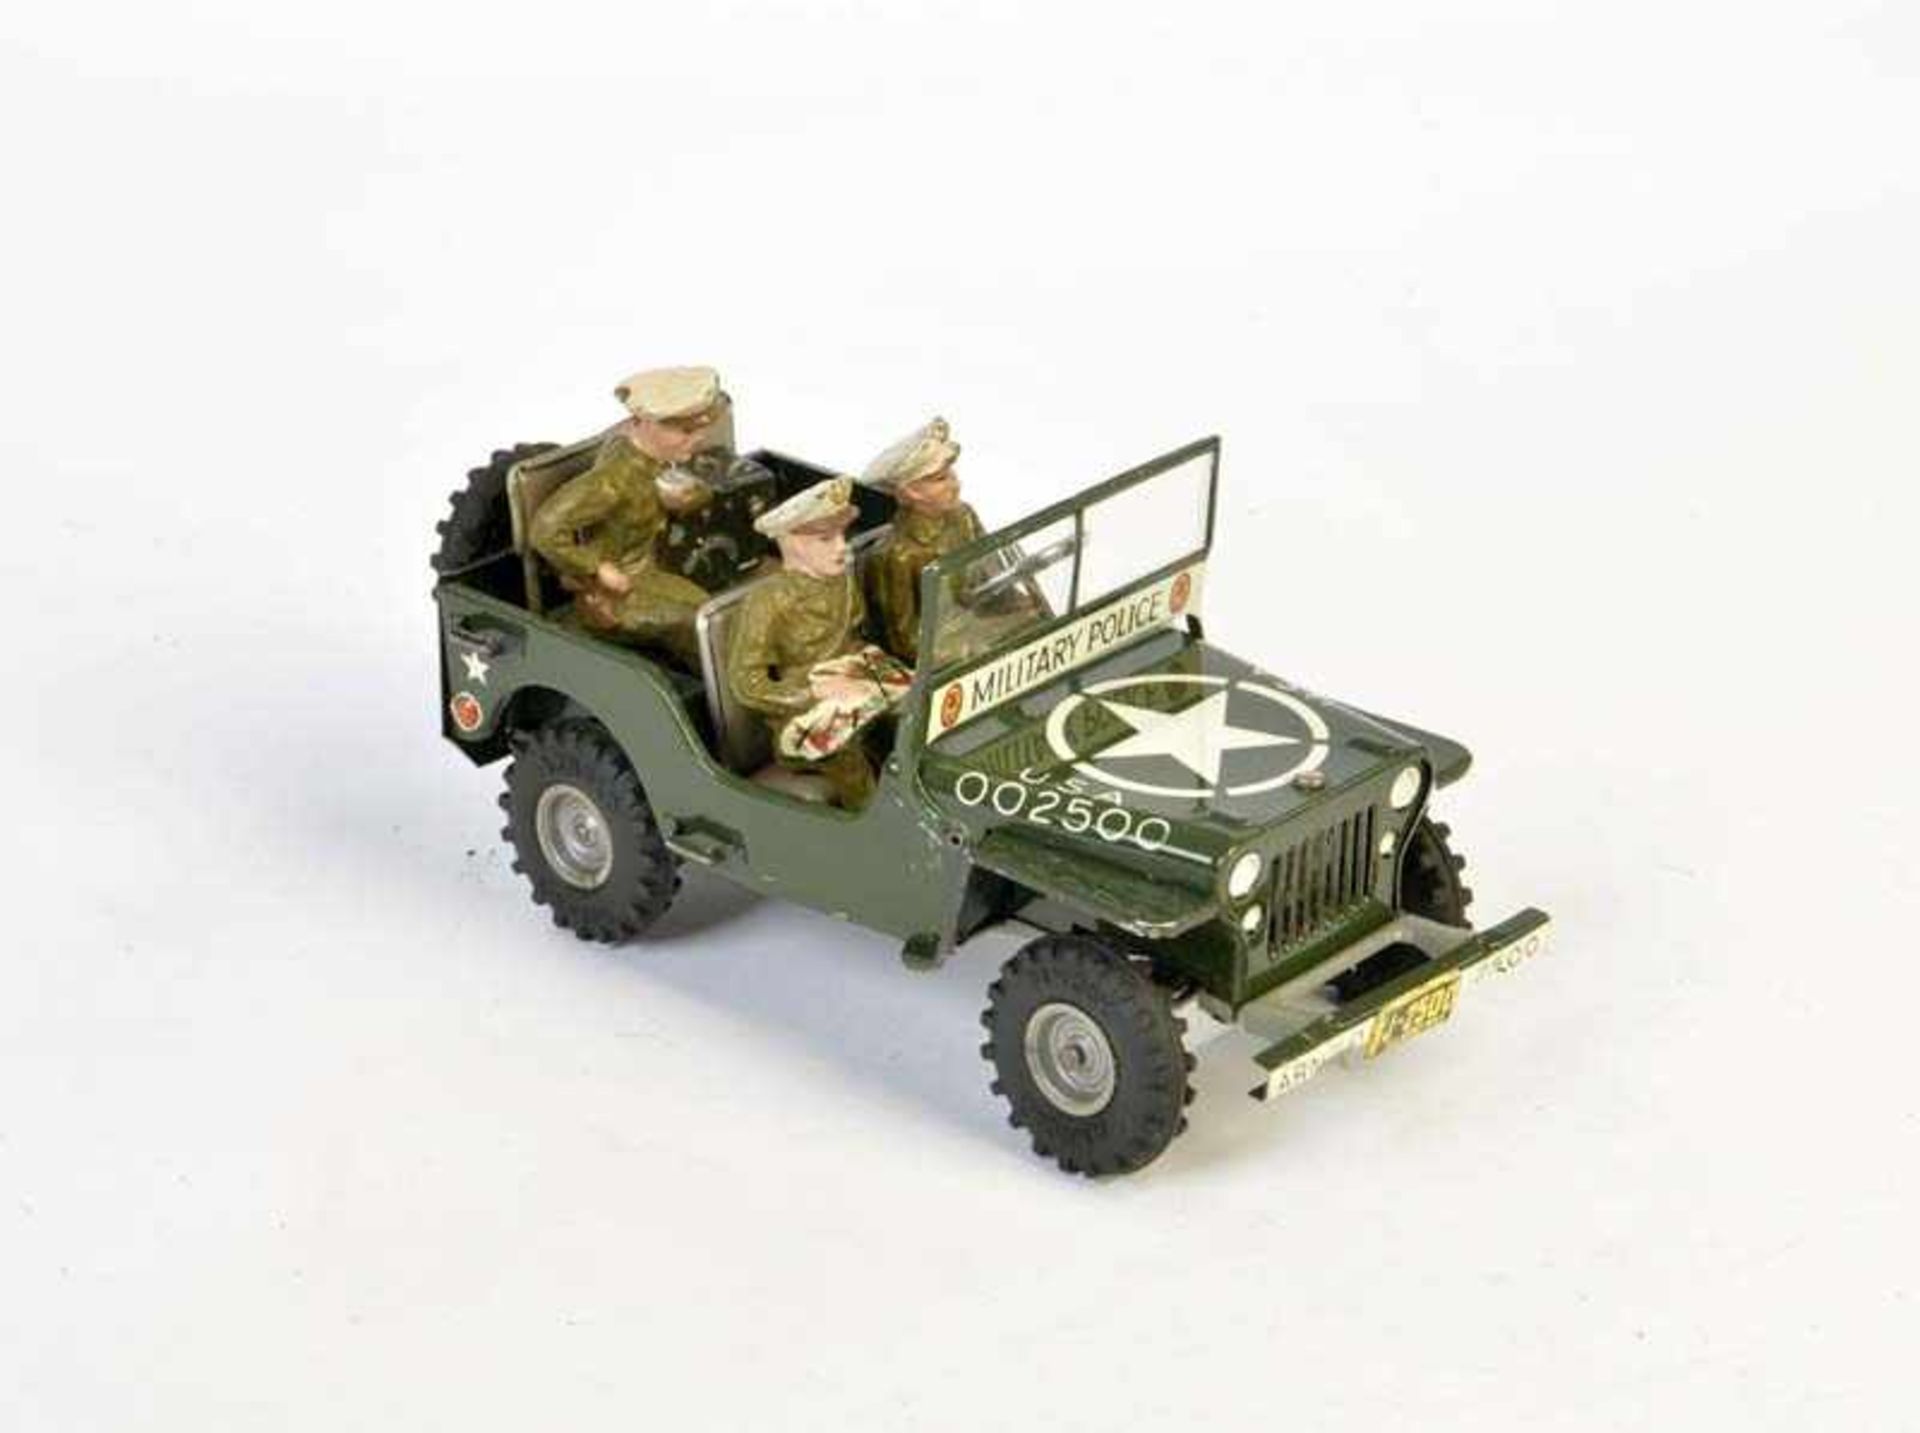 Arnold, Jeep 2500 mit Besatzung, W.-Germany, 17 cm, Blech, UW ok, Z 2+Arnold, Jeep 2500 with Crew,